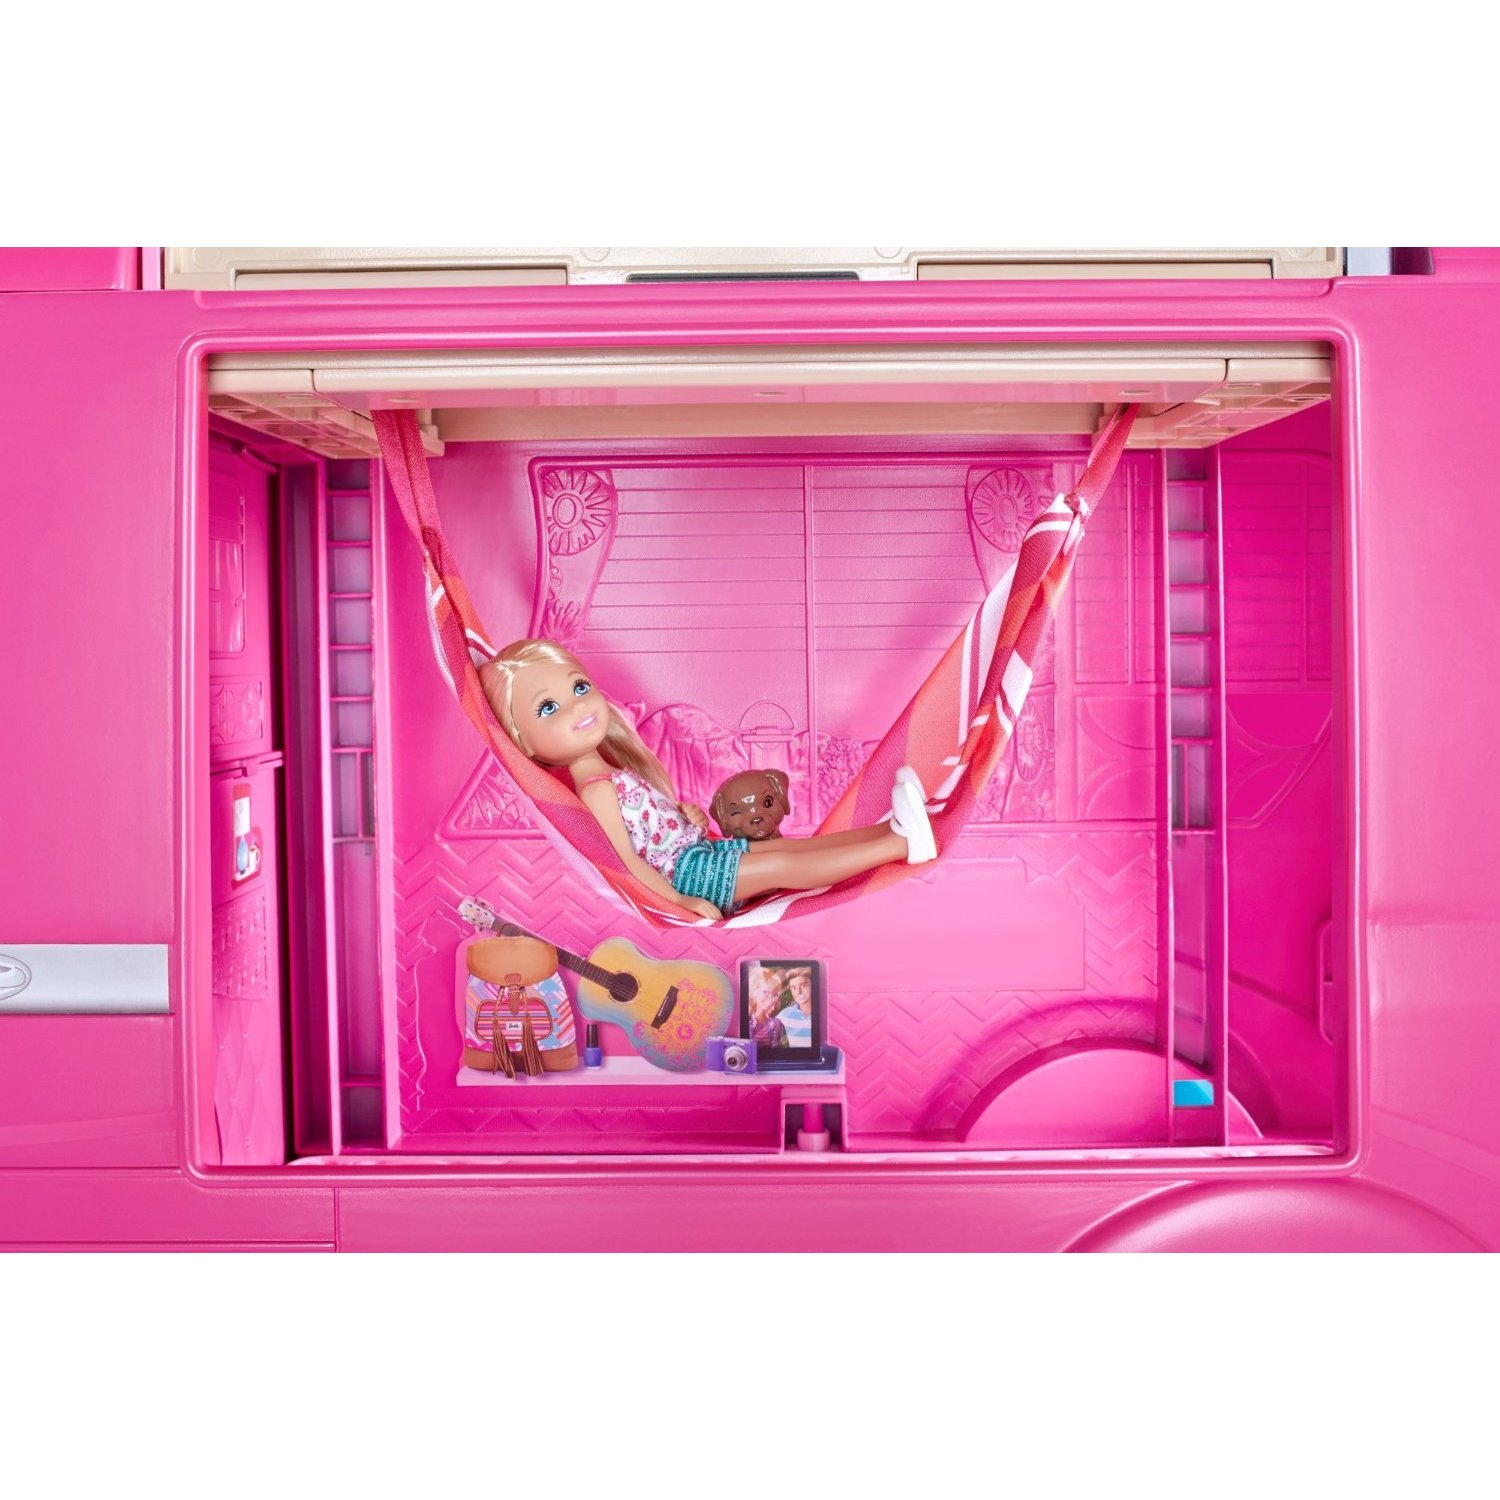 Barbie Pink Pop-Up Camper Van RV with Pool Chelsea and Pinypon